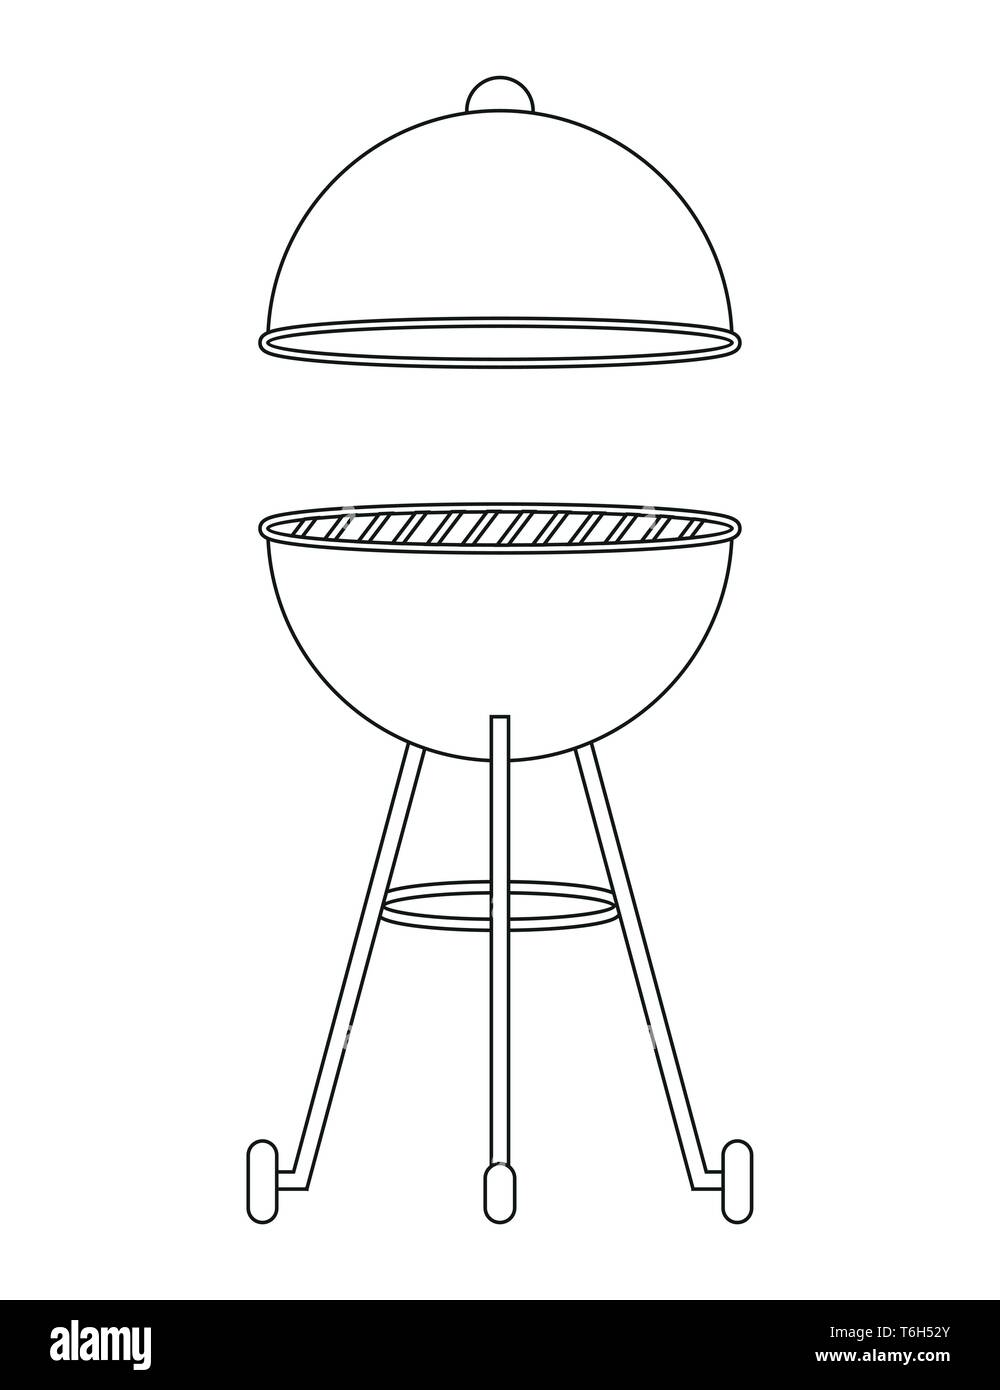 Bbq Wasserkocher barbecue Maßbild auf weißem Hintergrund Vektor-illustration EPS 10 isoliert Stock Vektor